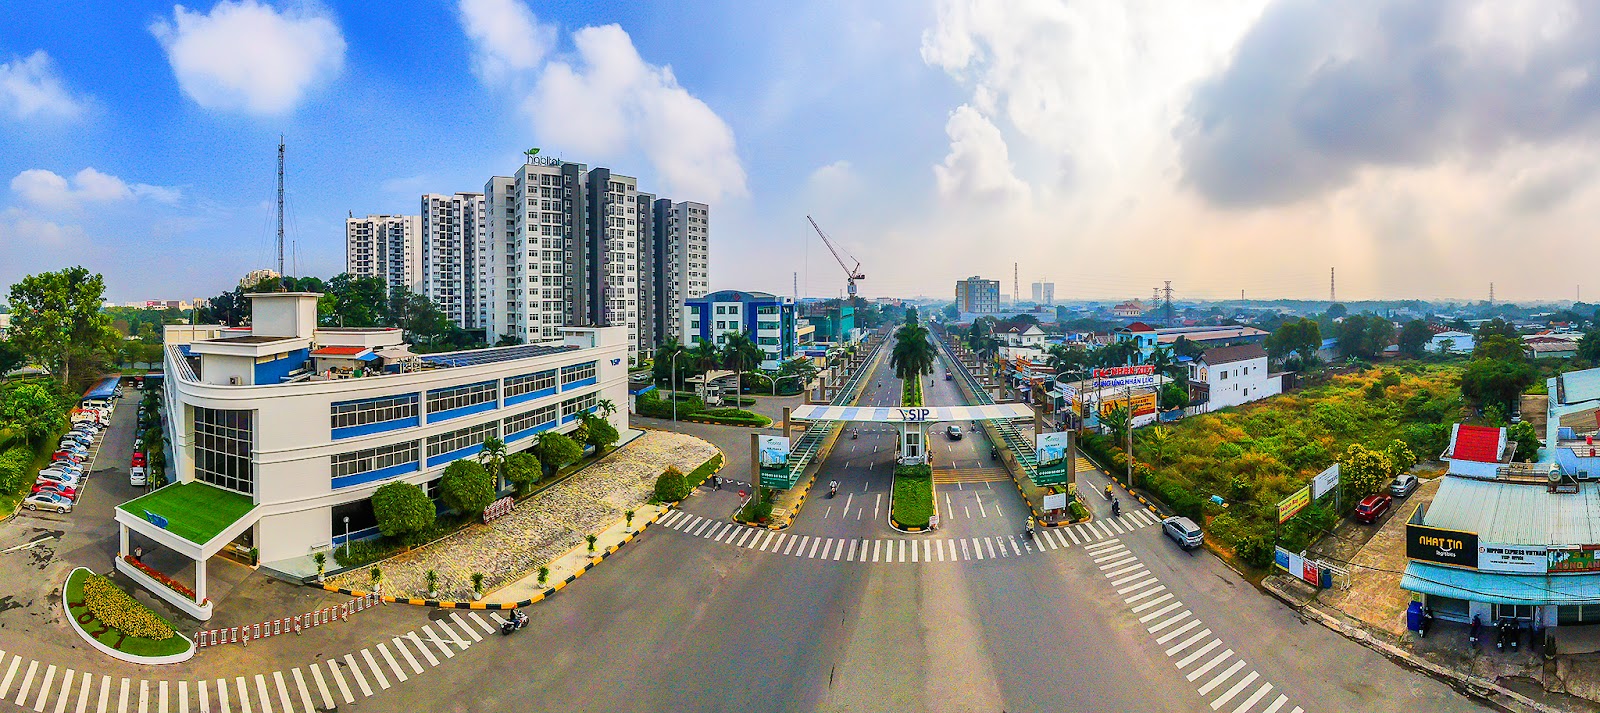 12 khu công nghiệp VSIP, Sài Gòn Centre và những công trình ghi dấu ấn Singapore tại Việt Nam - Ảnh 2.